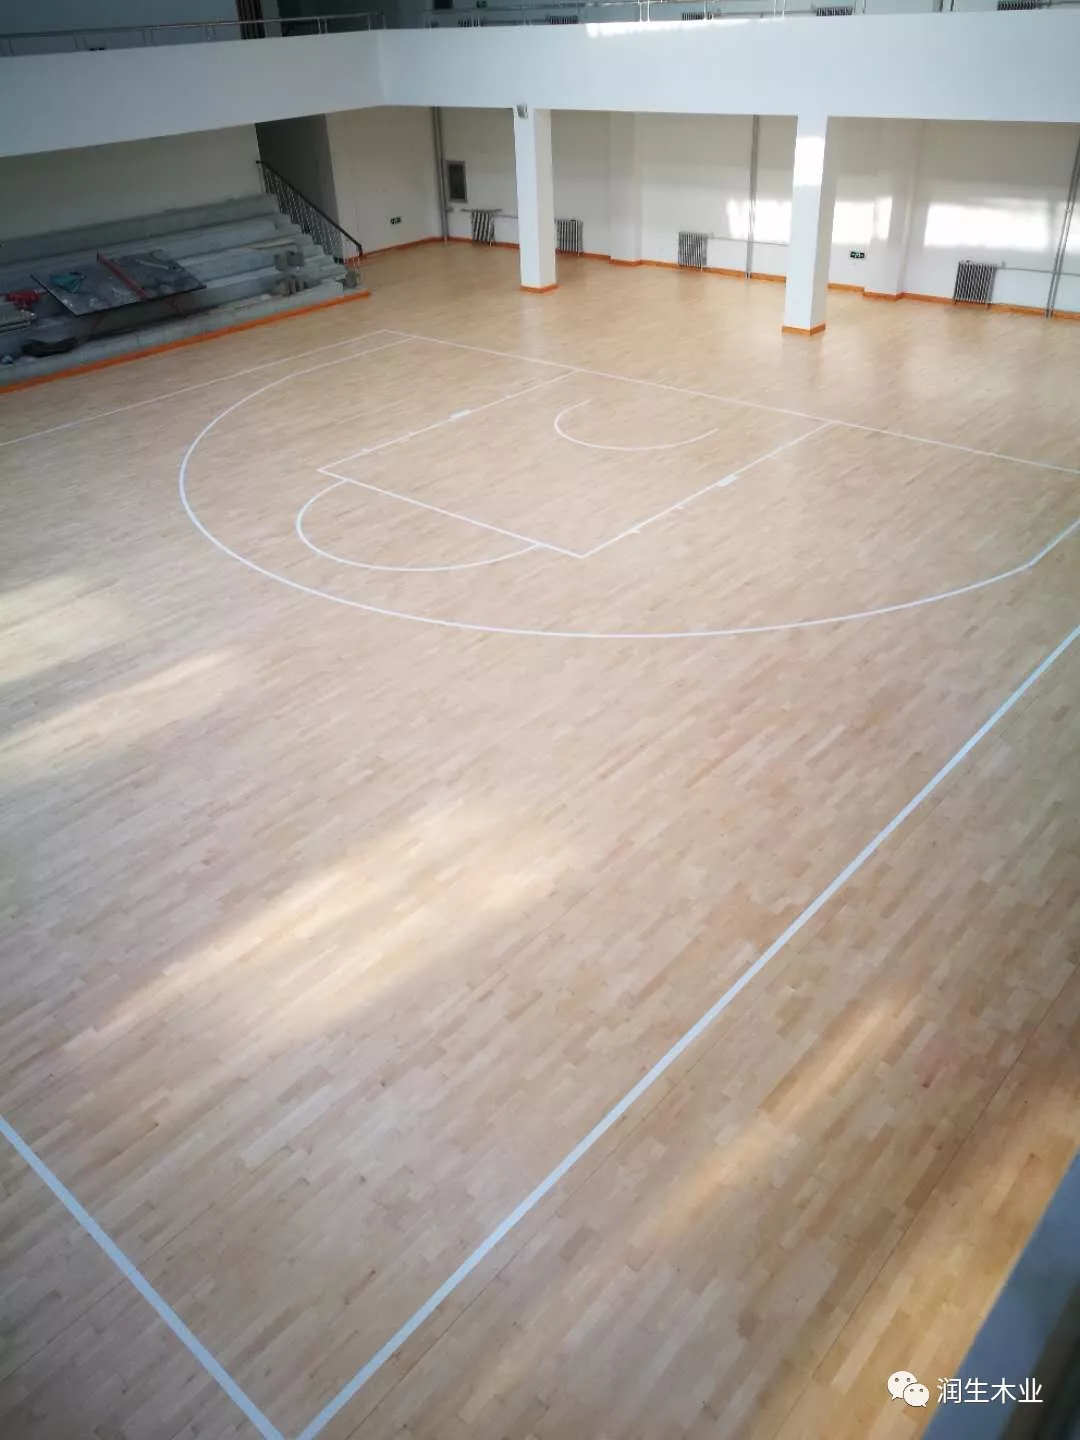 枫木a级运动木地板整体铺设效果篮球馆木地板维修翻新后篮球馆旧木